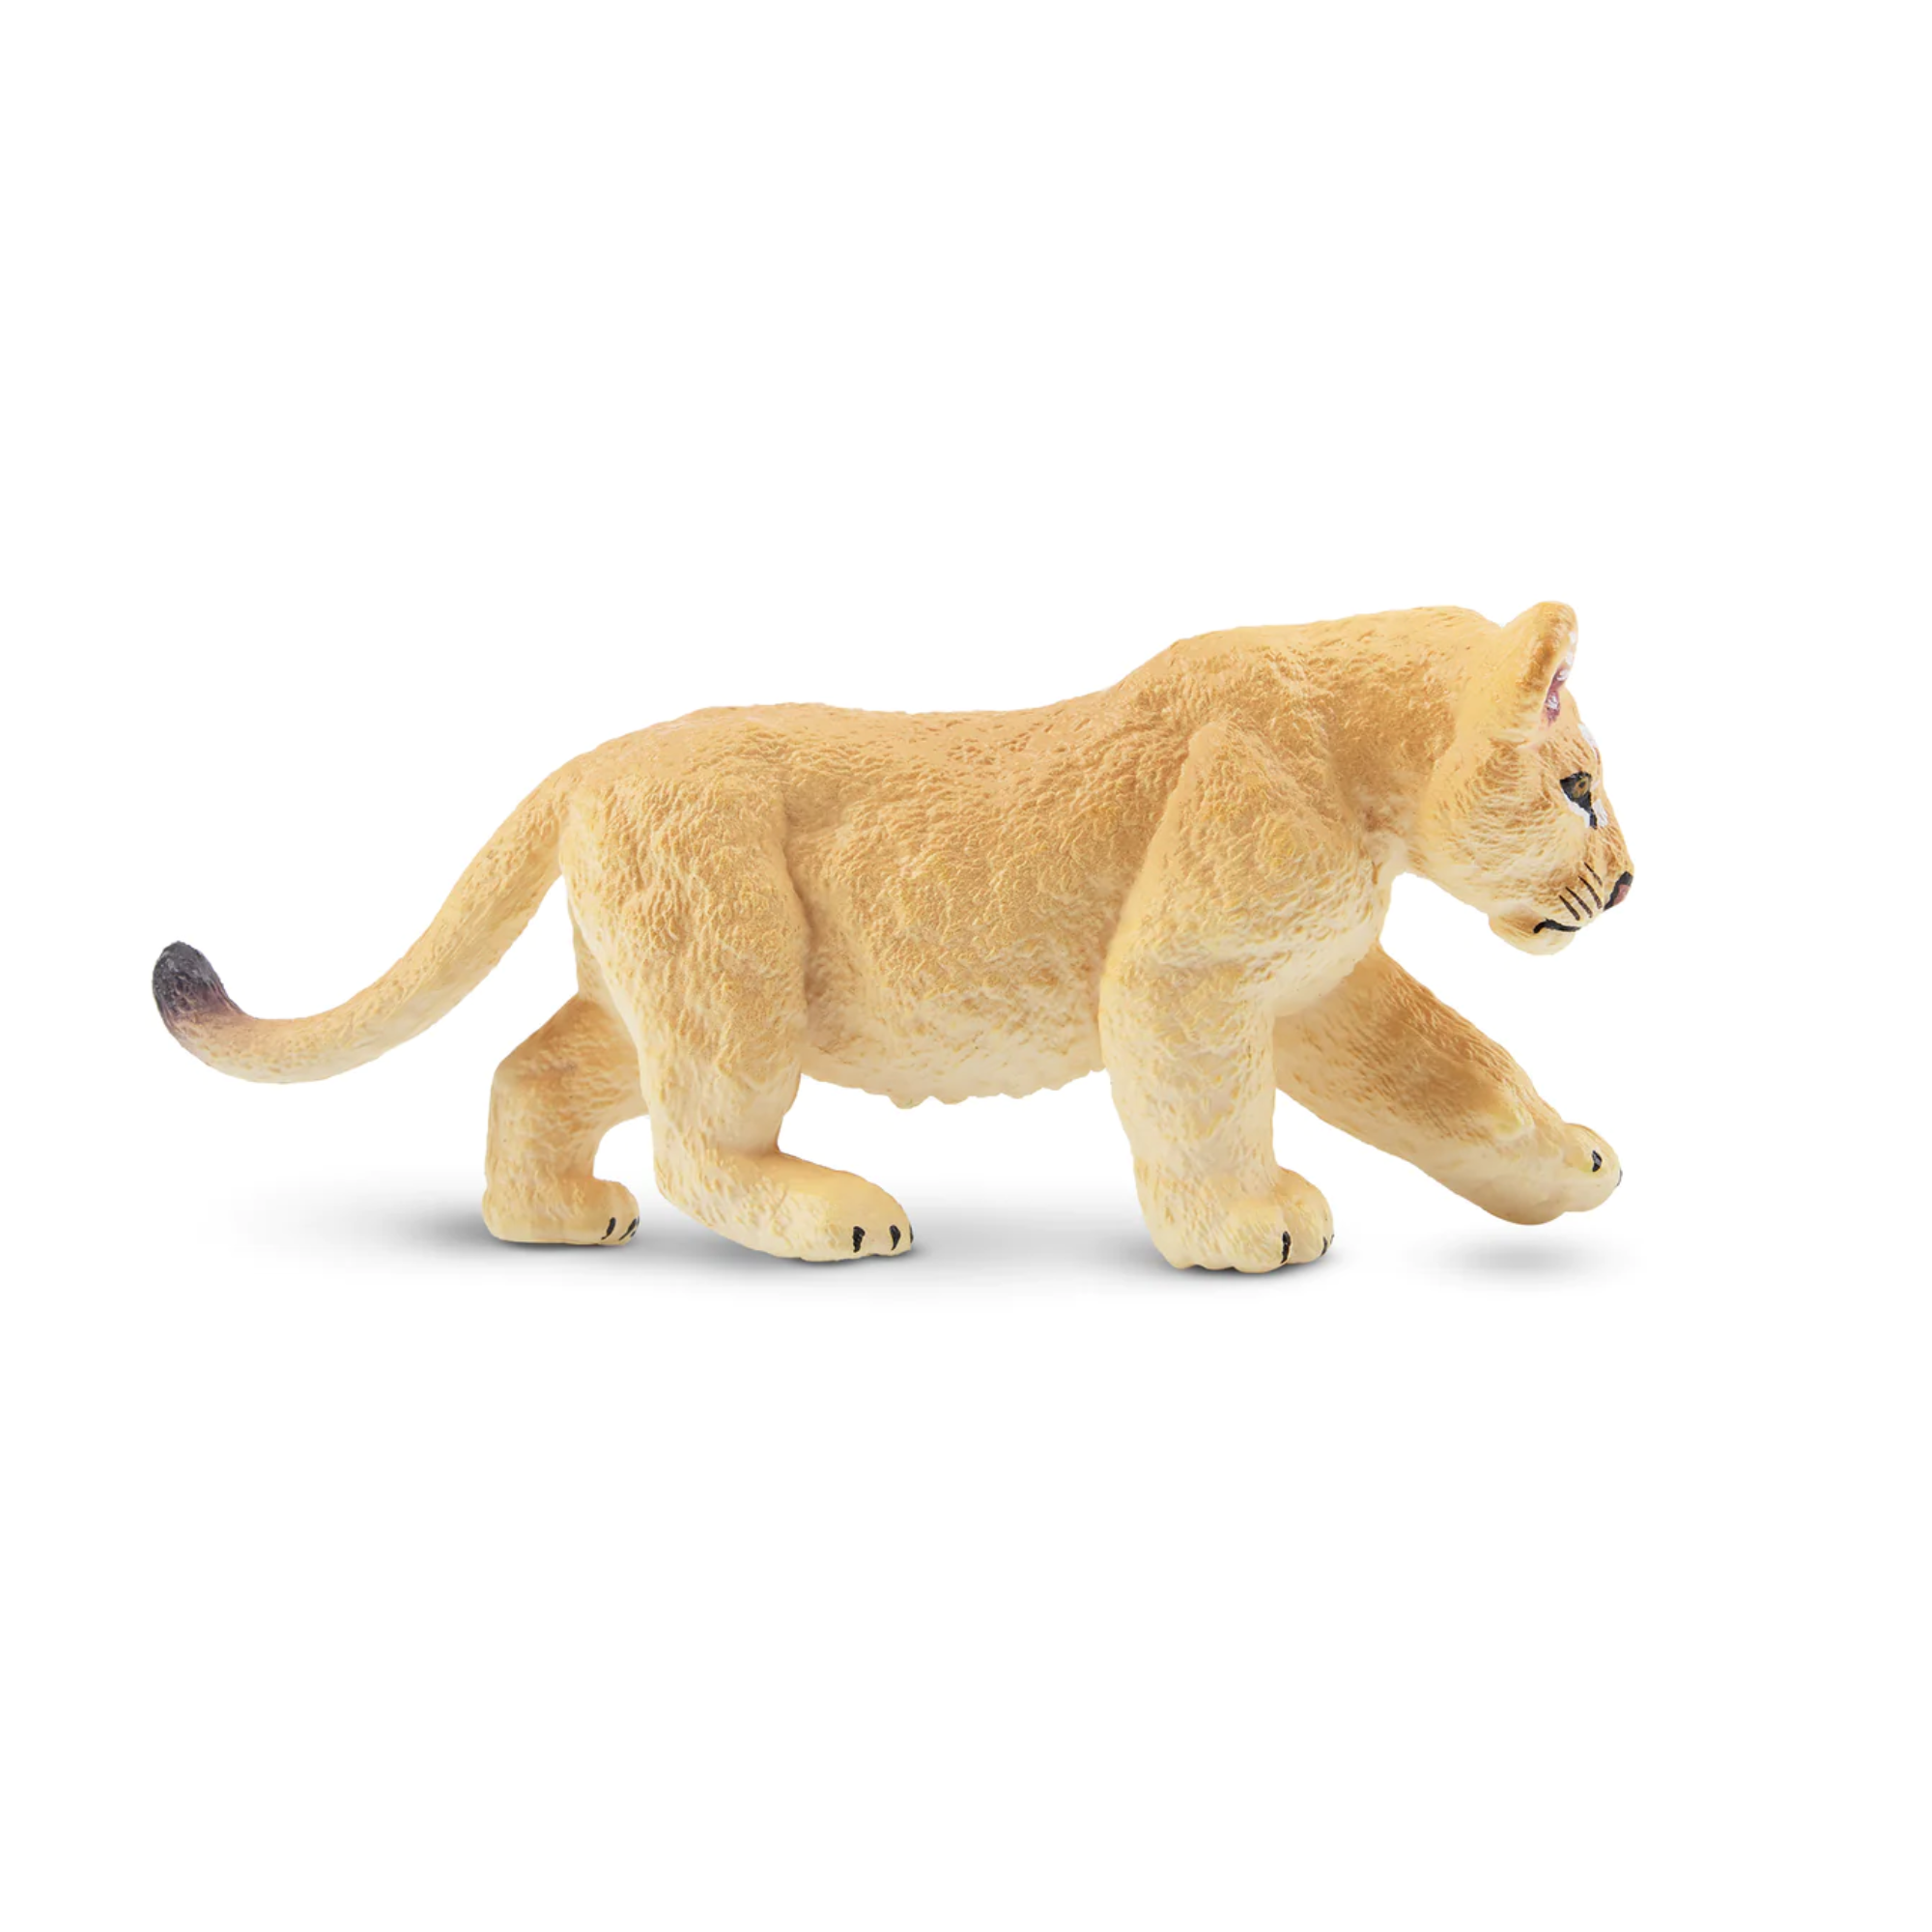 Toymany Walking Lion Cub Figurine Toy